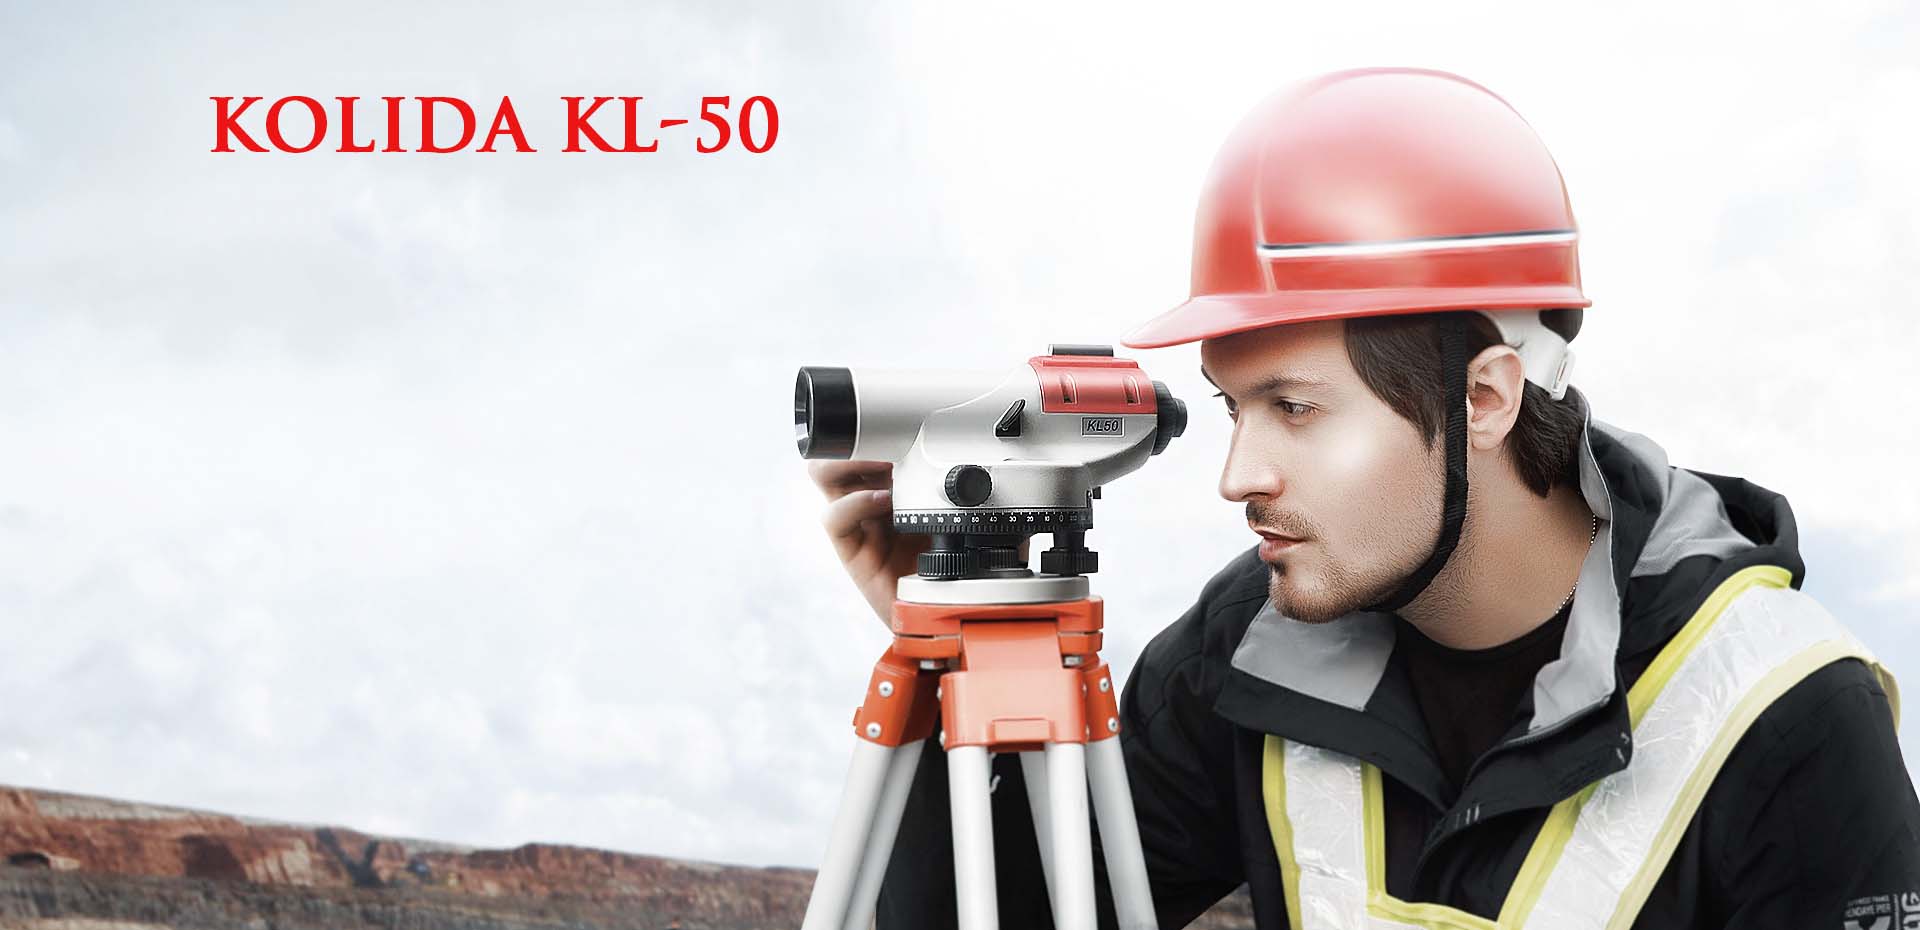 กล้องระดับอัตโนมัติ กำลังขยาย 32 เท่า ยี่ห้อ KOLIDA รุ่น KL-50 (ครบชุด)